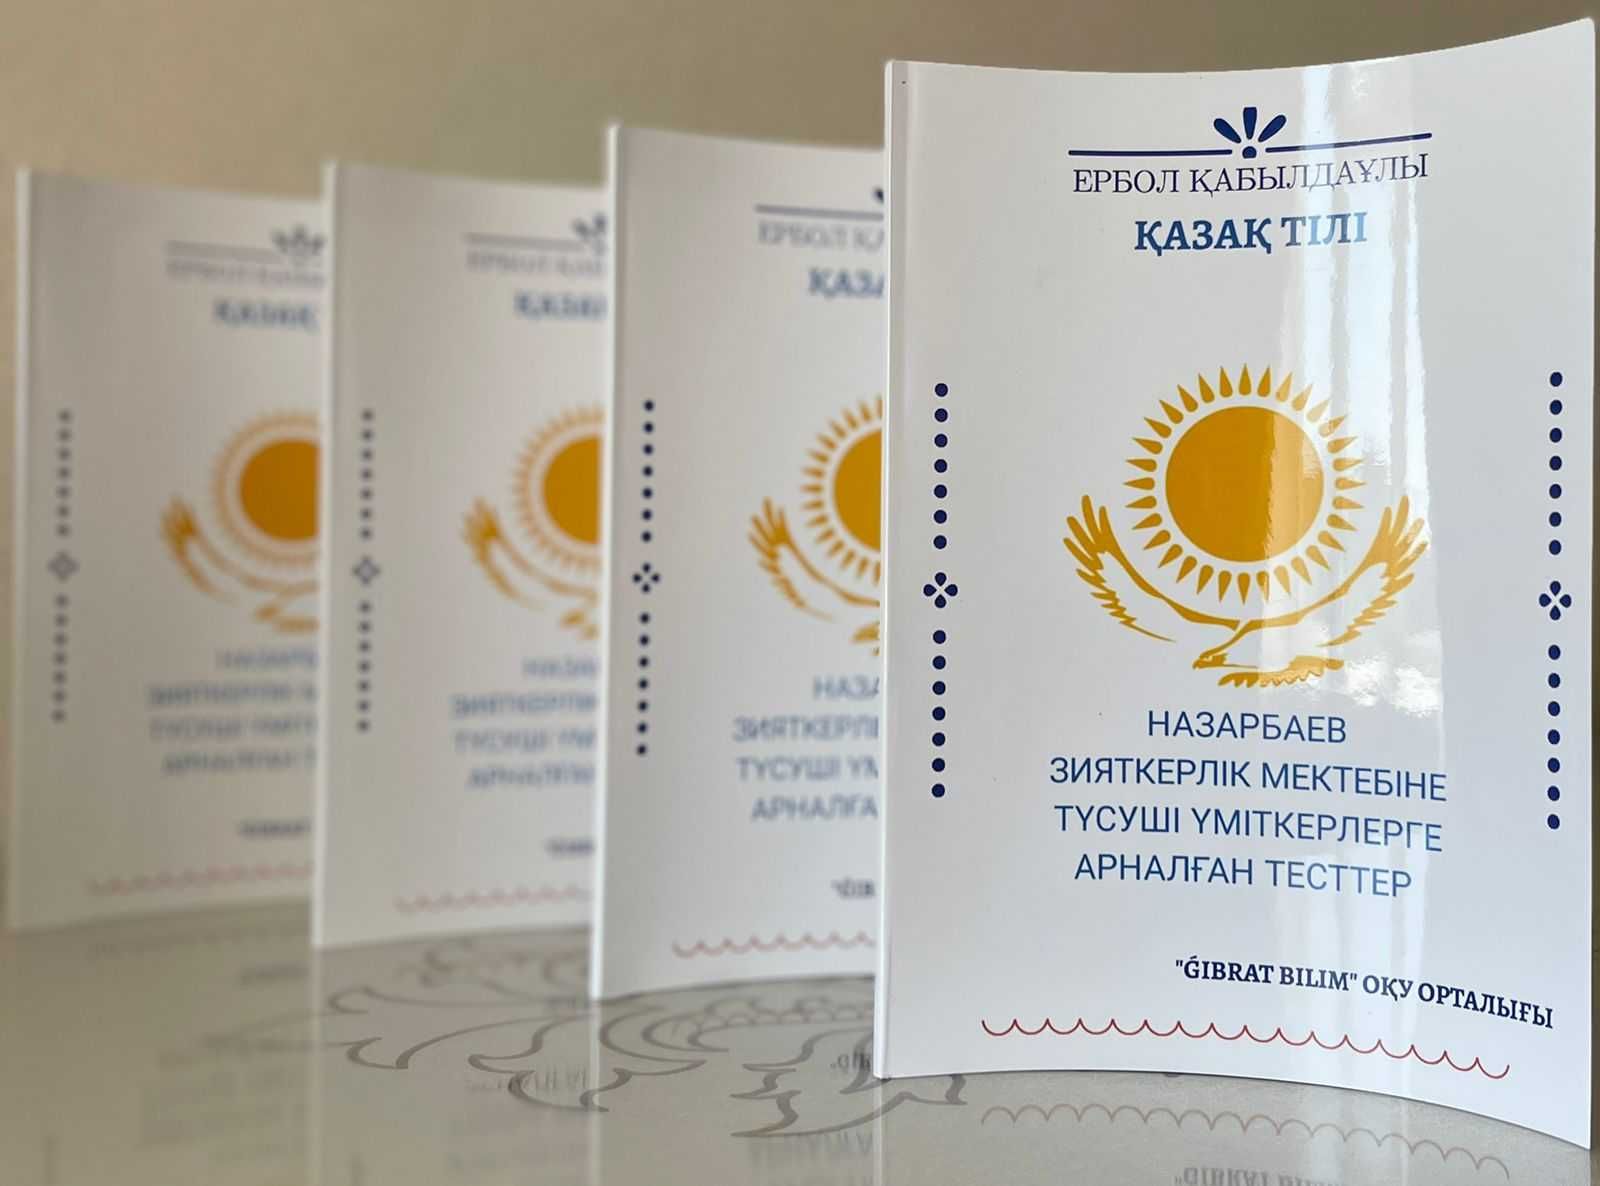 НИШ сборник тестов по казахскому языку (доставка есть)